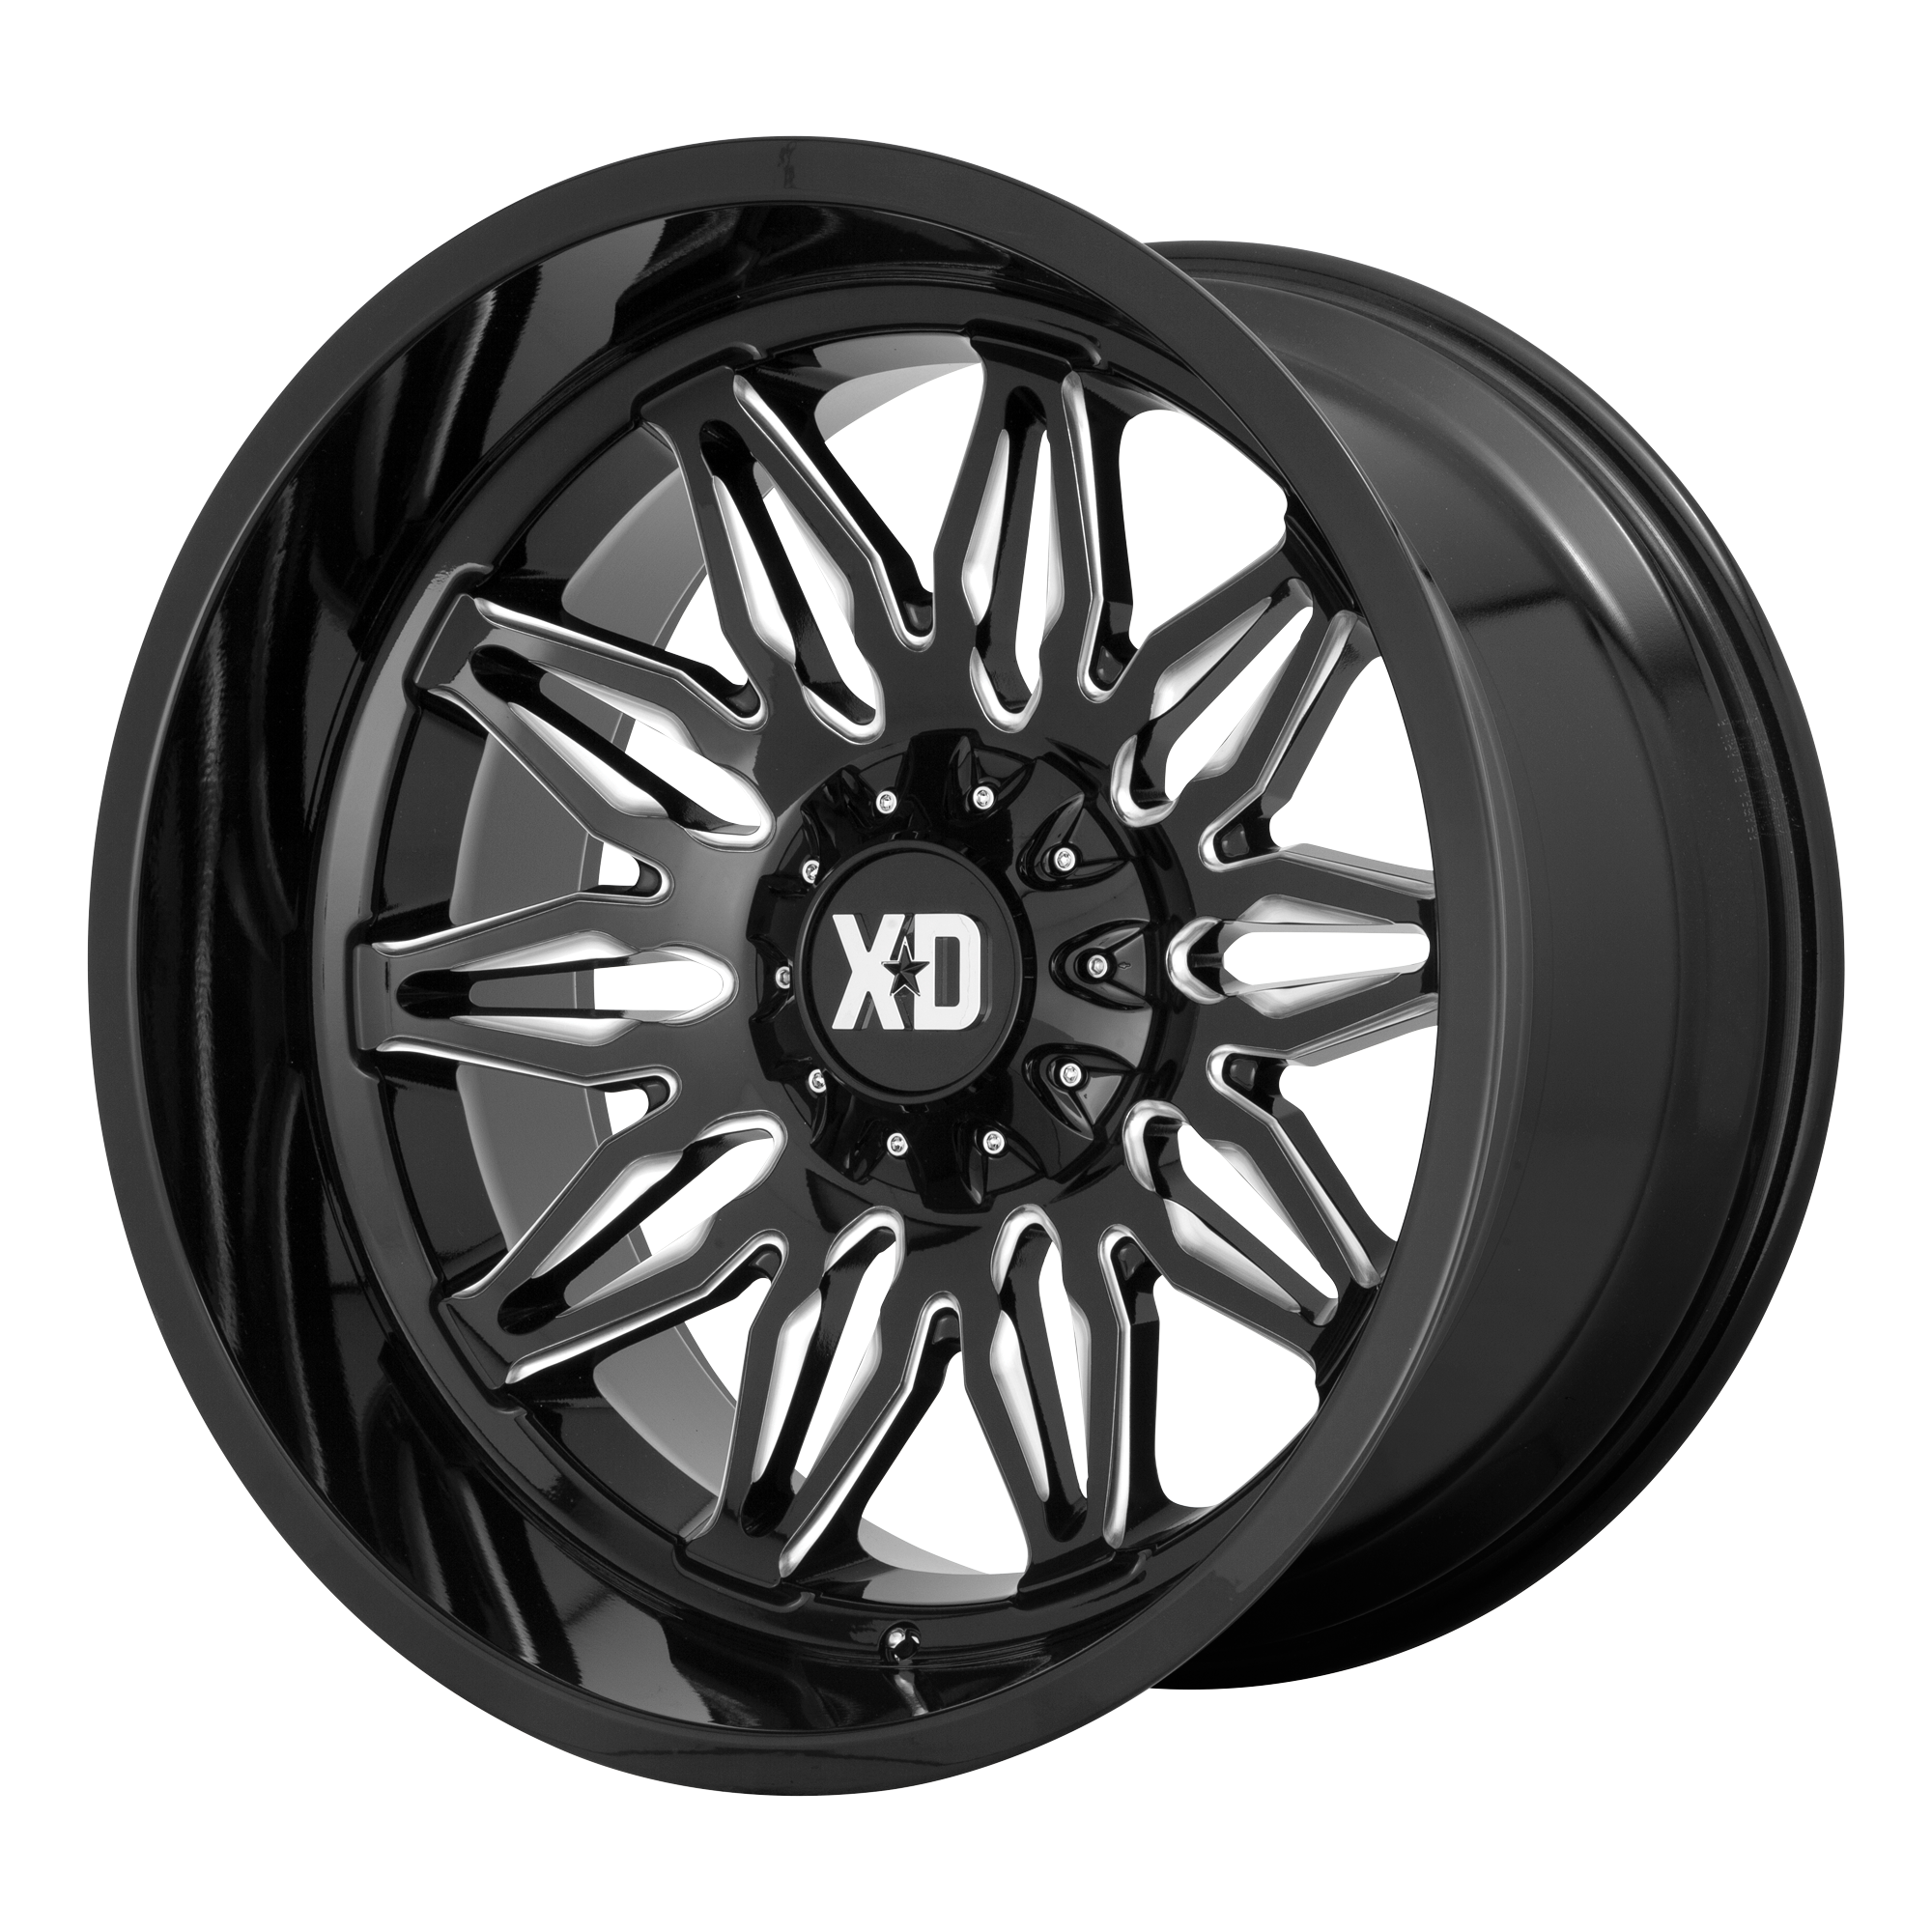 XD 22"x12" Non-Chrome Gloss Black Milled Custom Wheel ARSWCWXD85922267344N